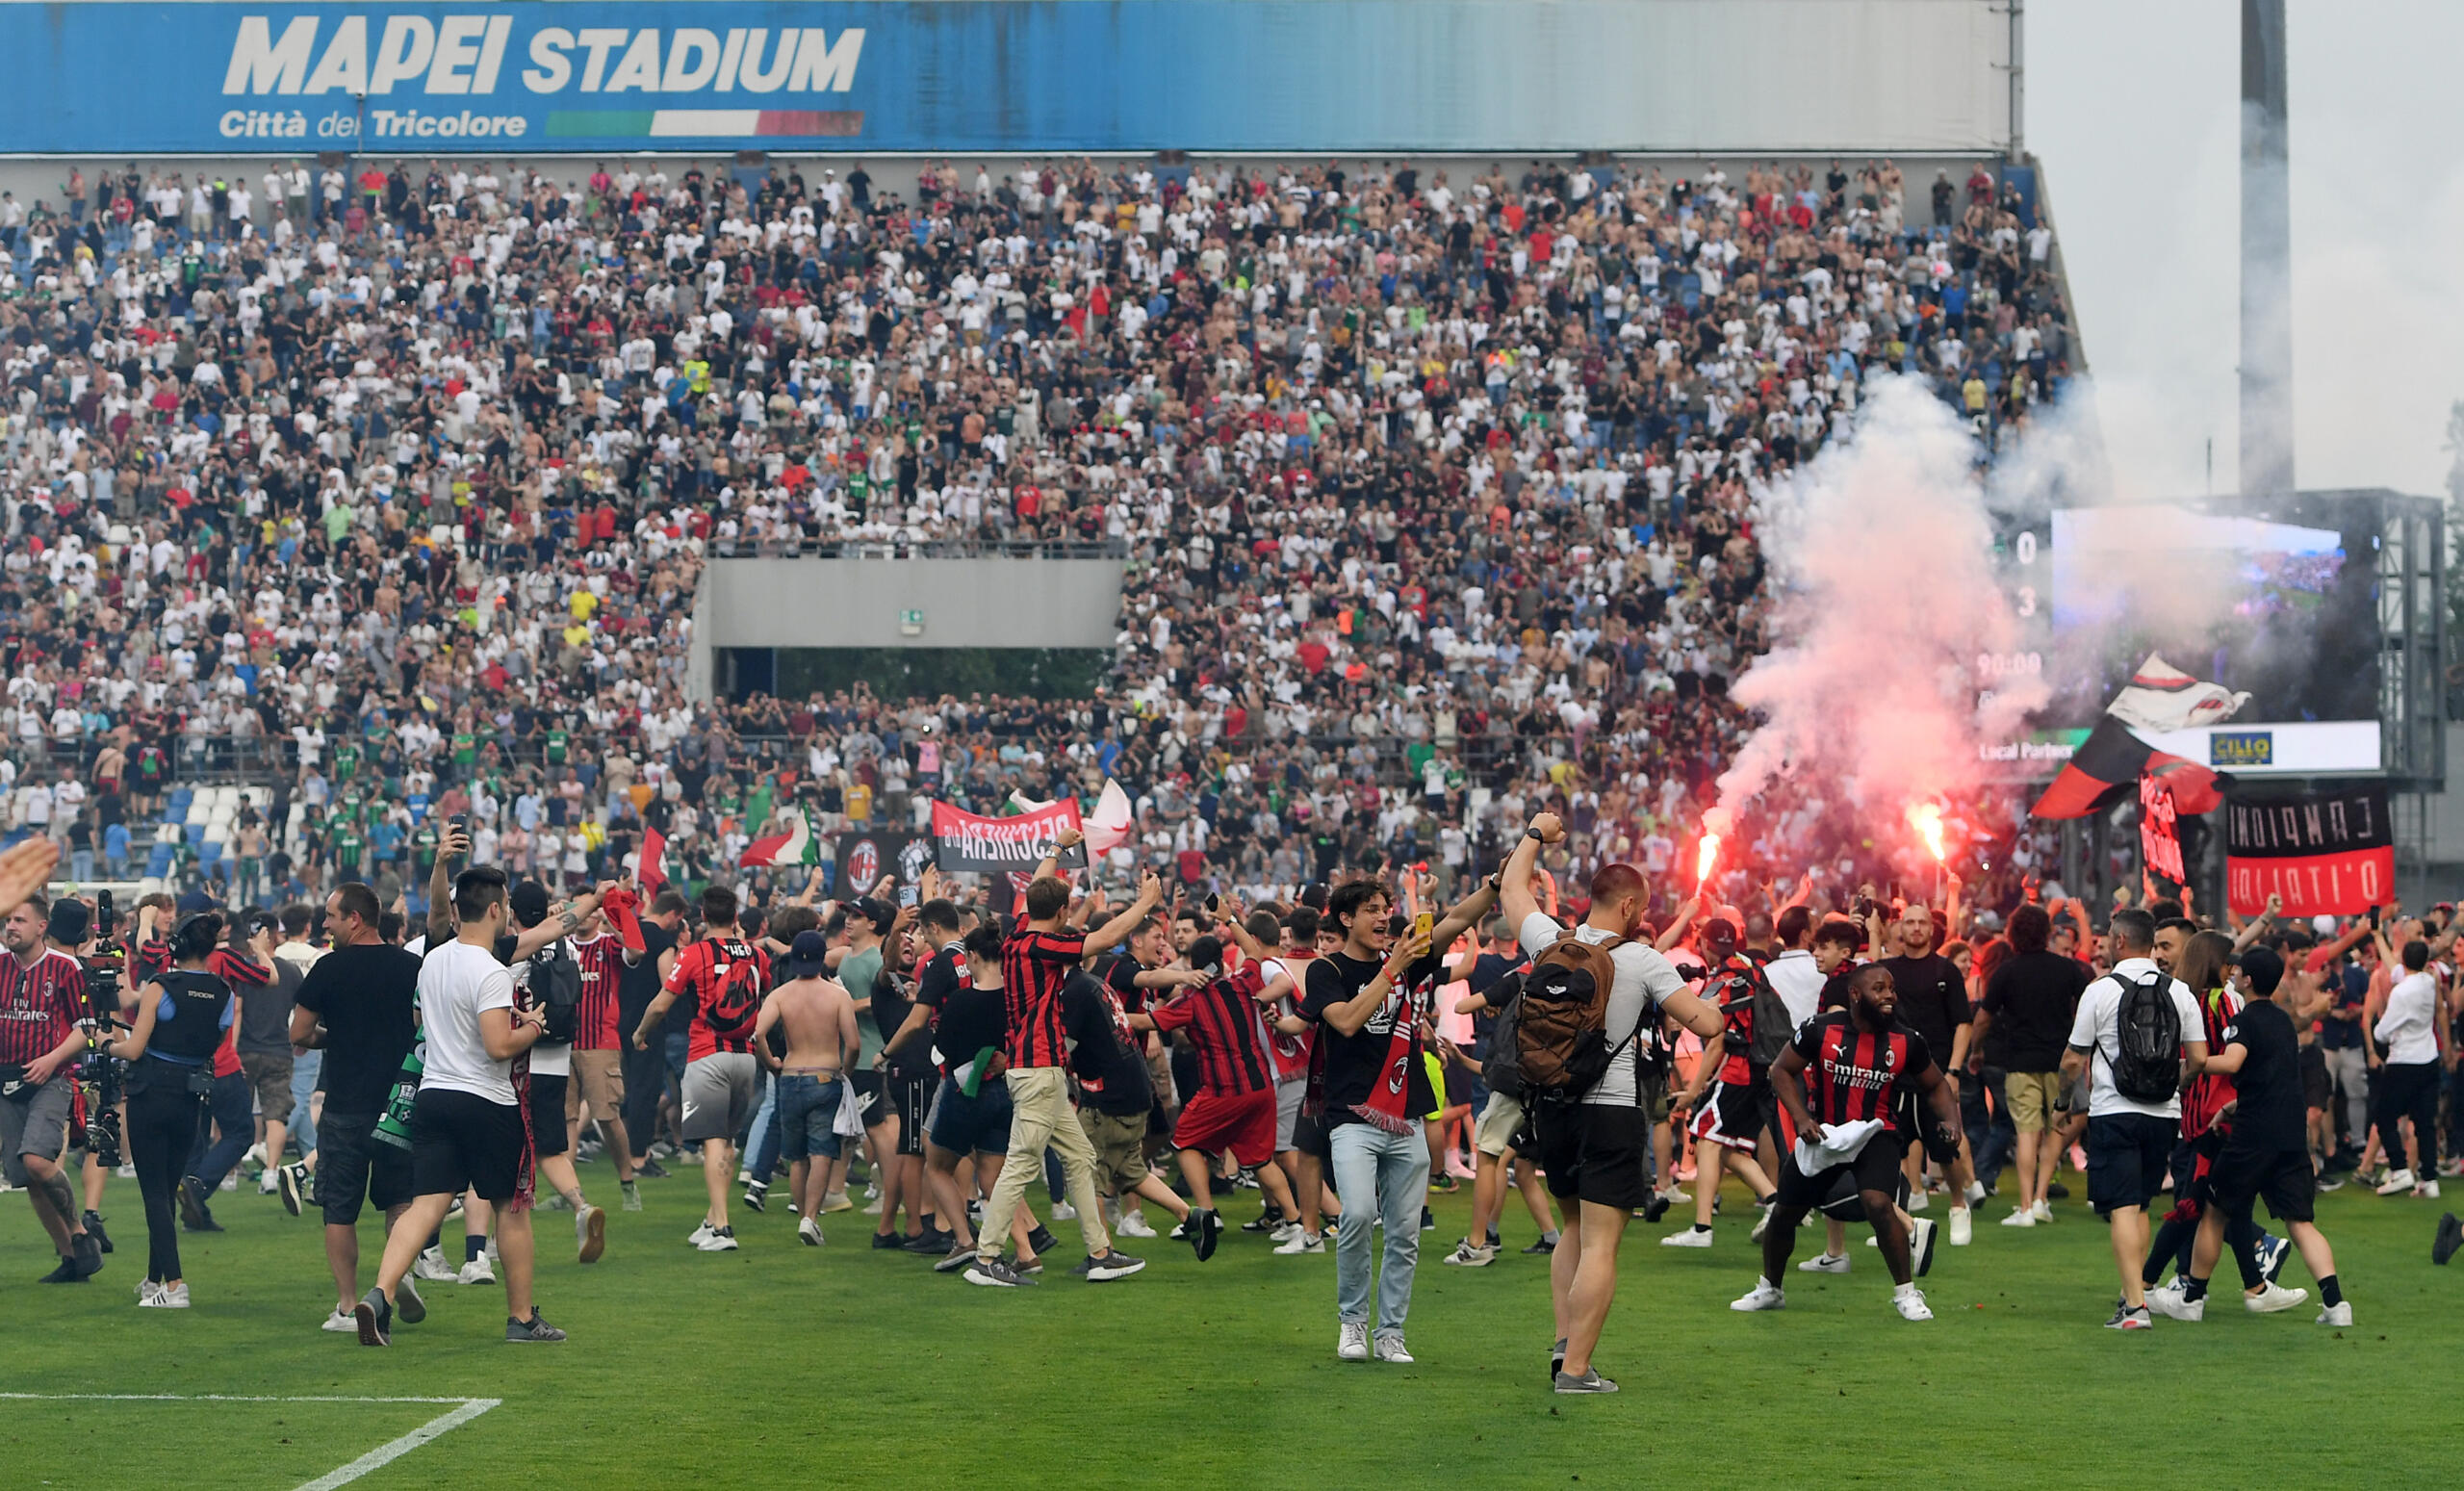 Milan Campione d'Italia